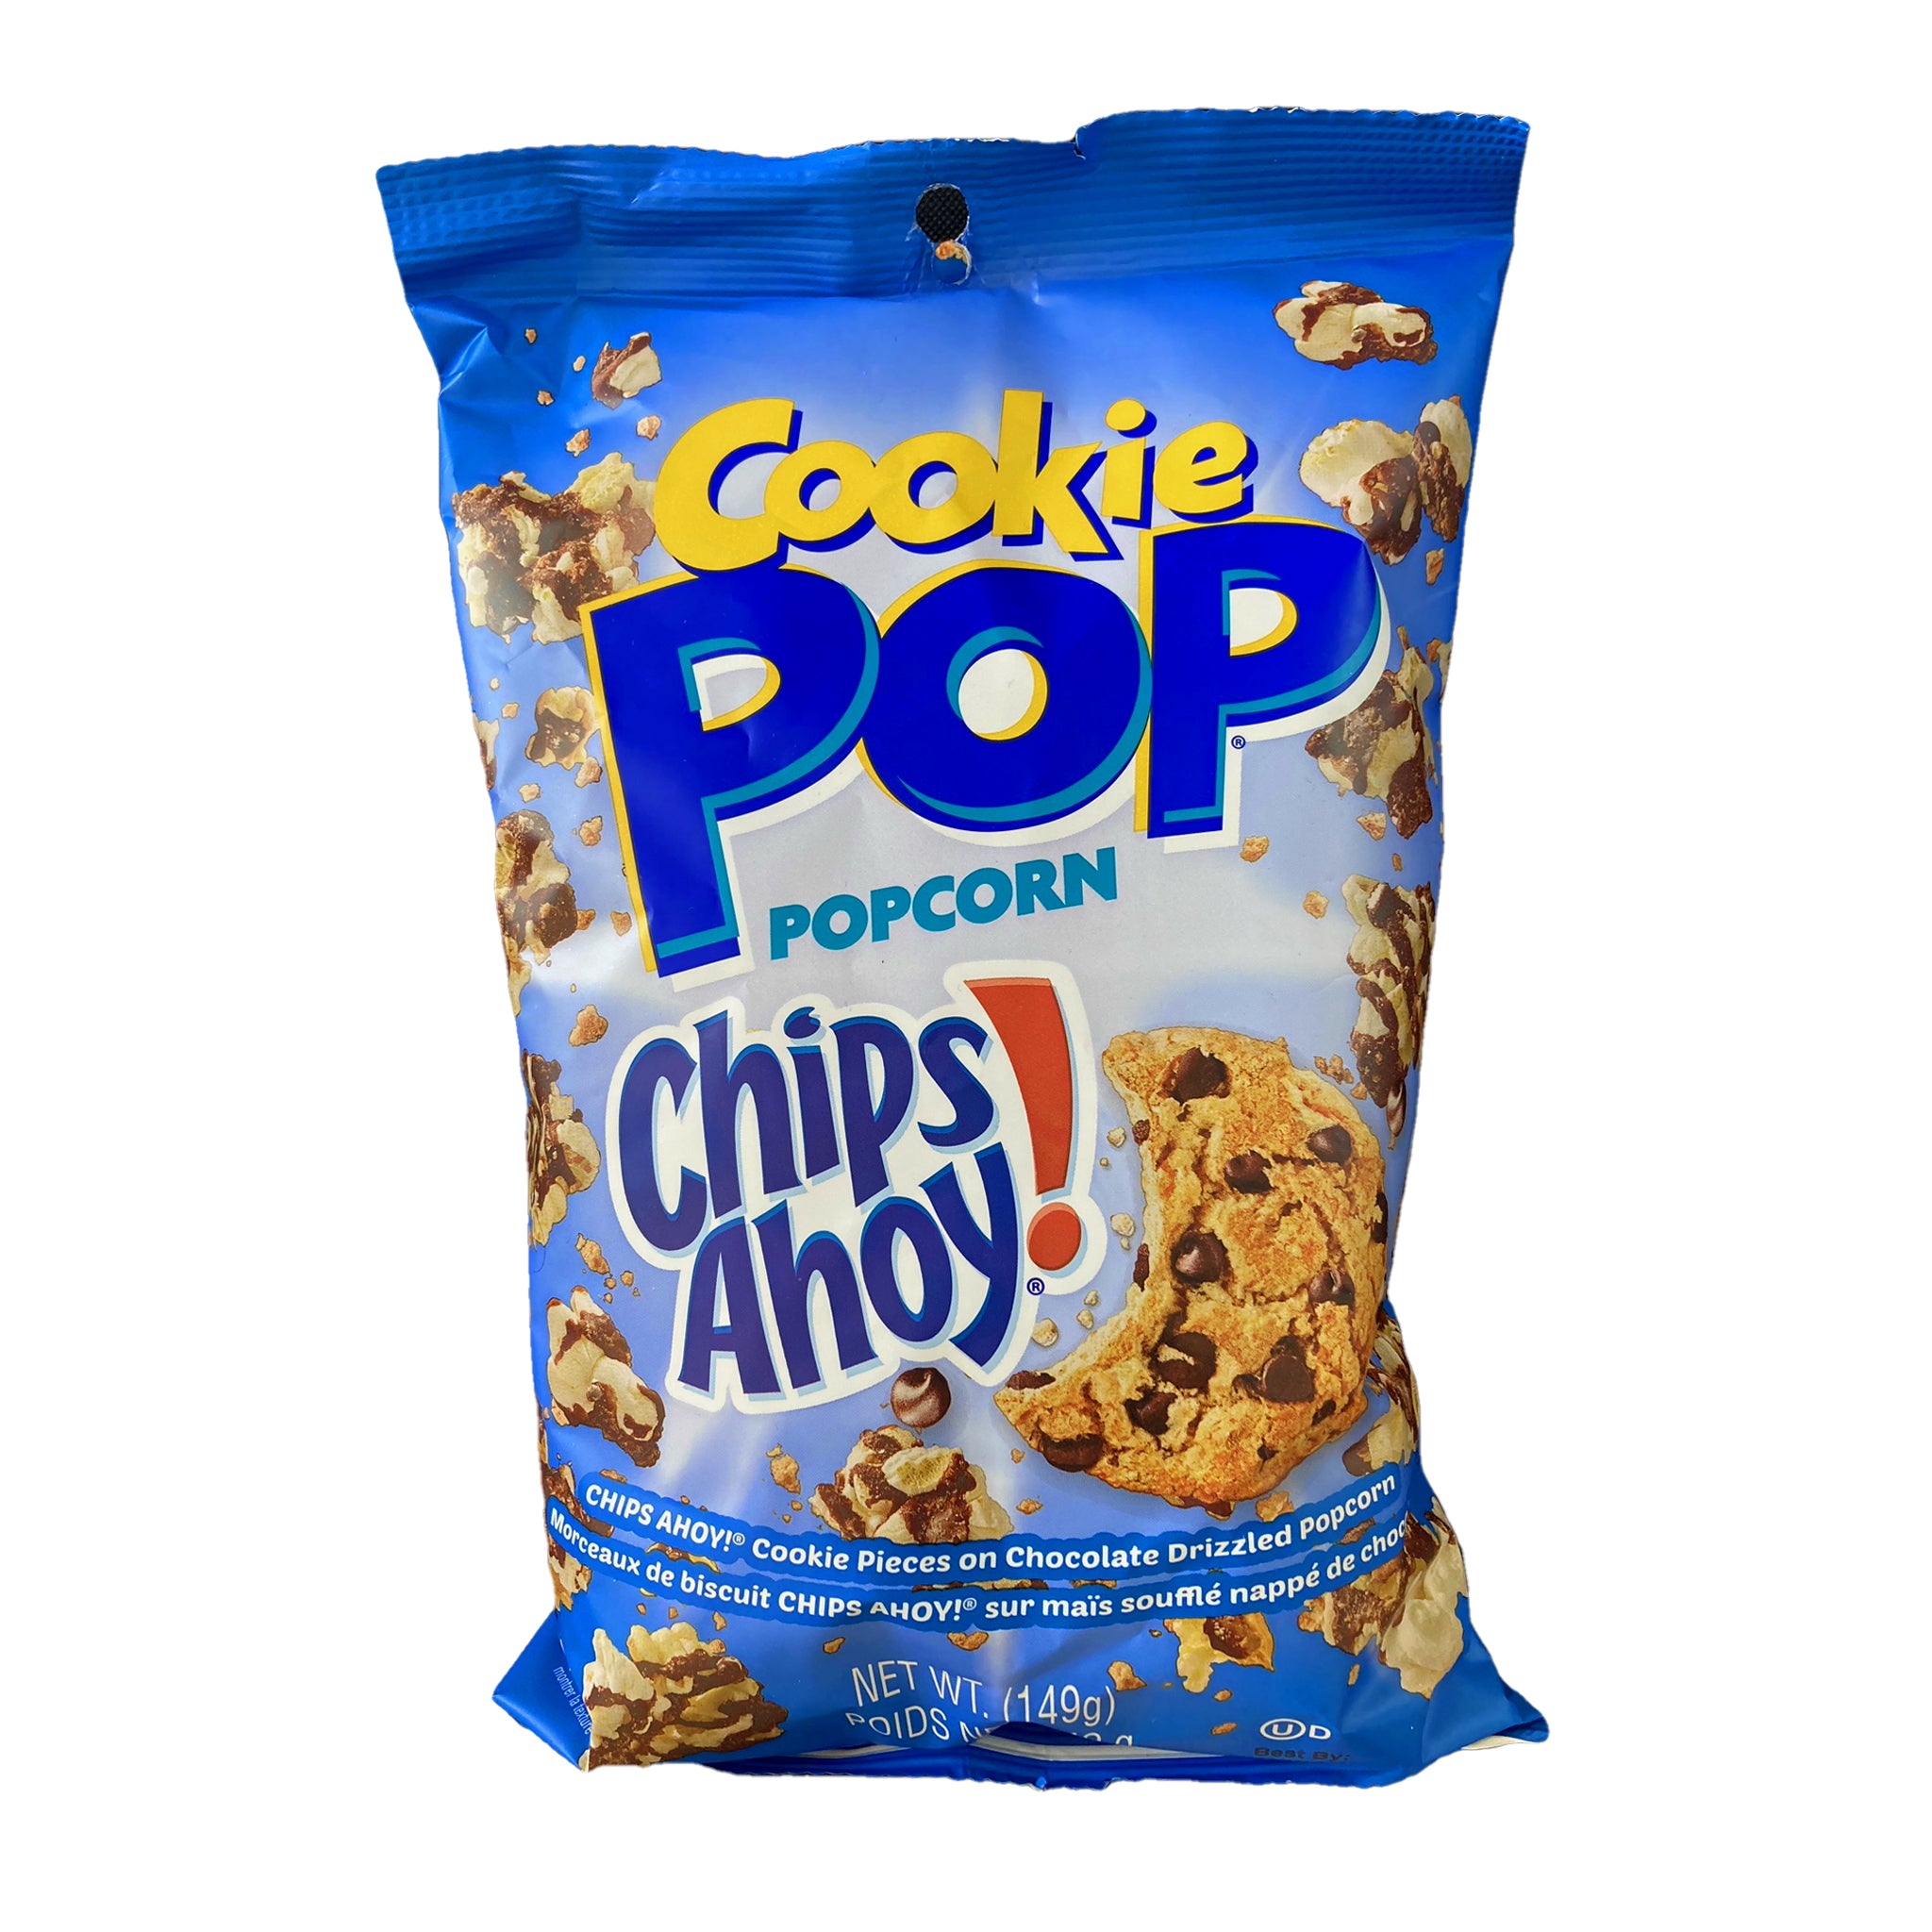 Popcorn Candy Pop Chips Ahoy פופקורן מותגים צ'יפס אוהוי - טעימים